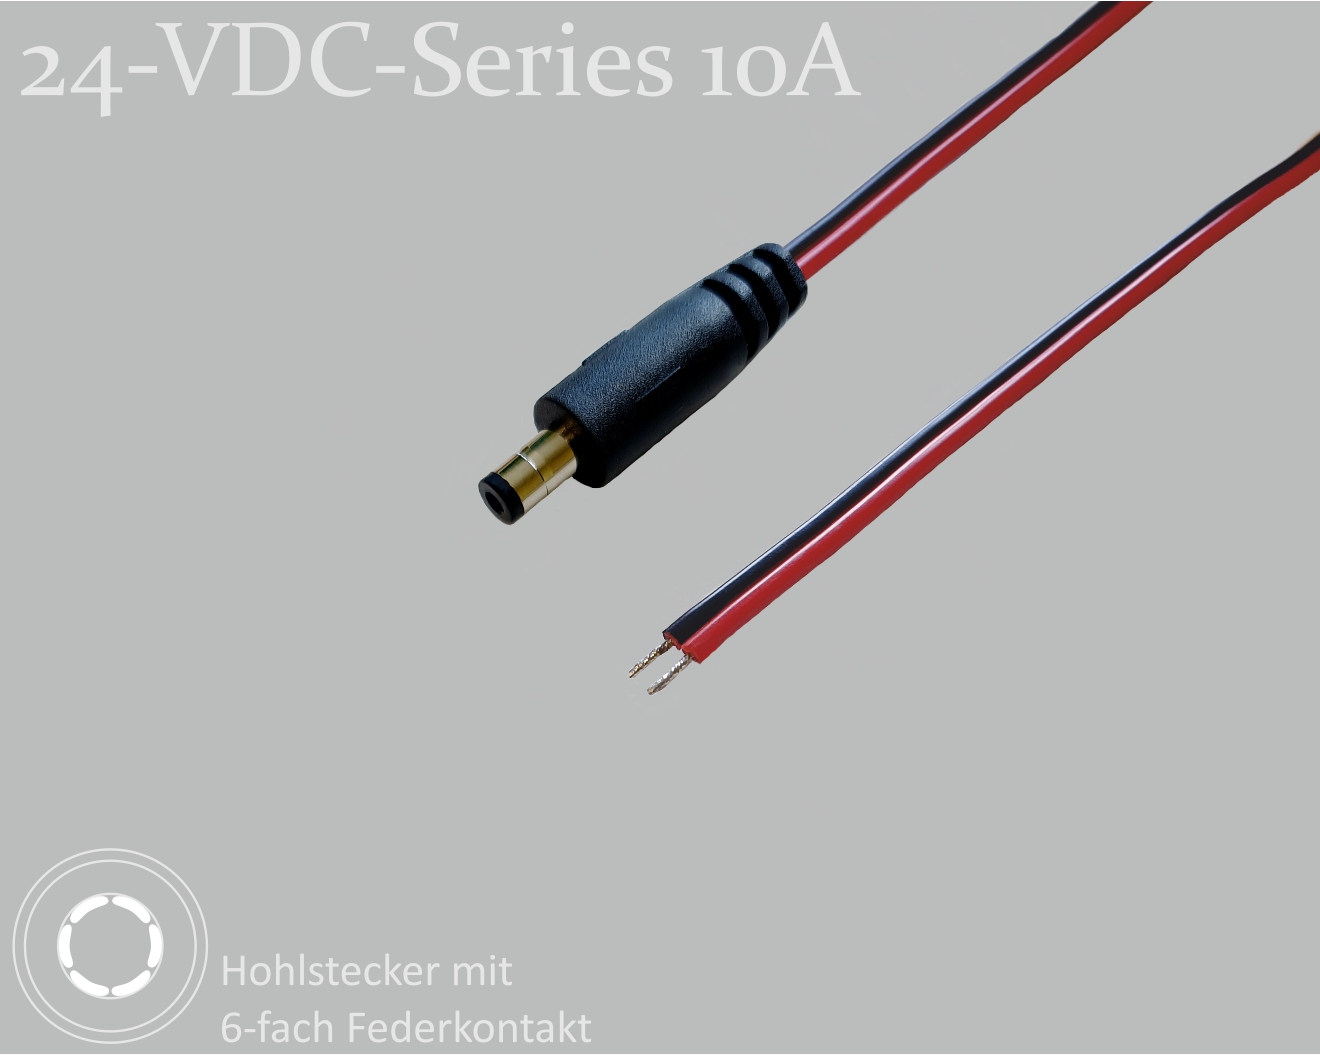 24-VDC-Series 10A, DC-Anschlusskabel, DC-Stecker mit 4-Federkontakt 2,5x5,5x9,5mm, Flachkabel 2x0,75mm², rot/schwarz, verzinnte Enden, 0,75m